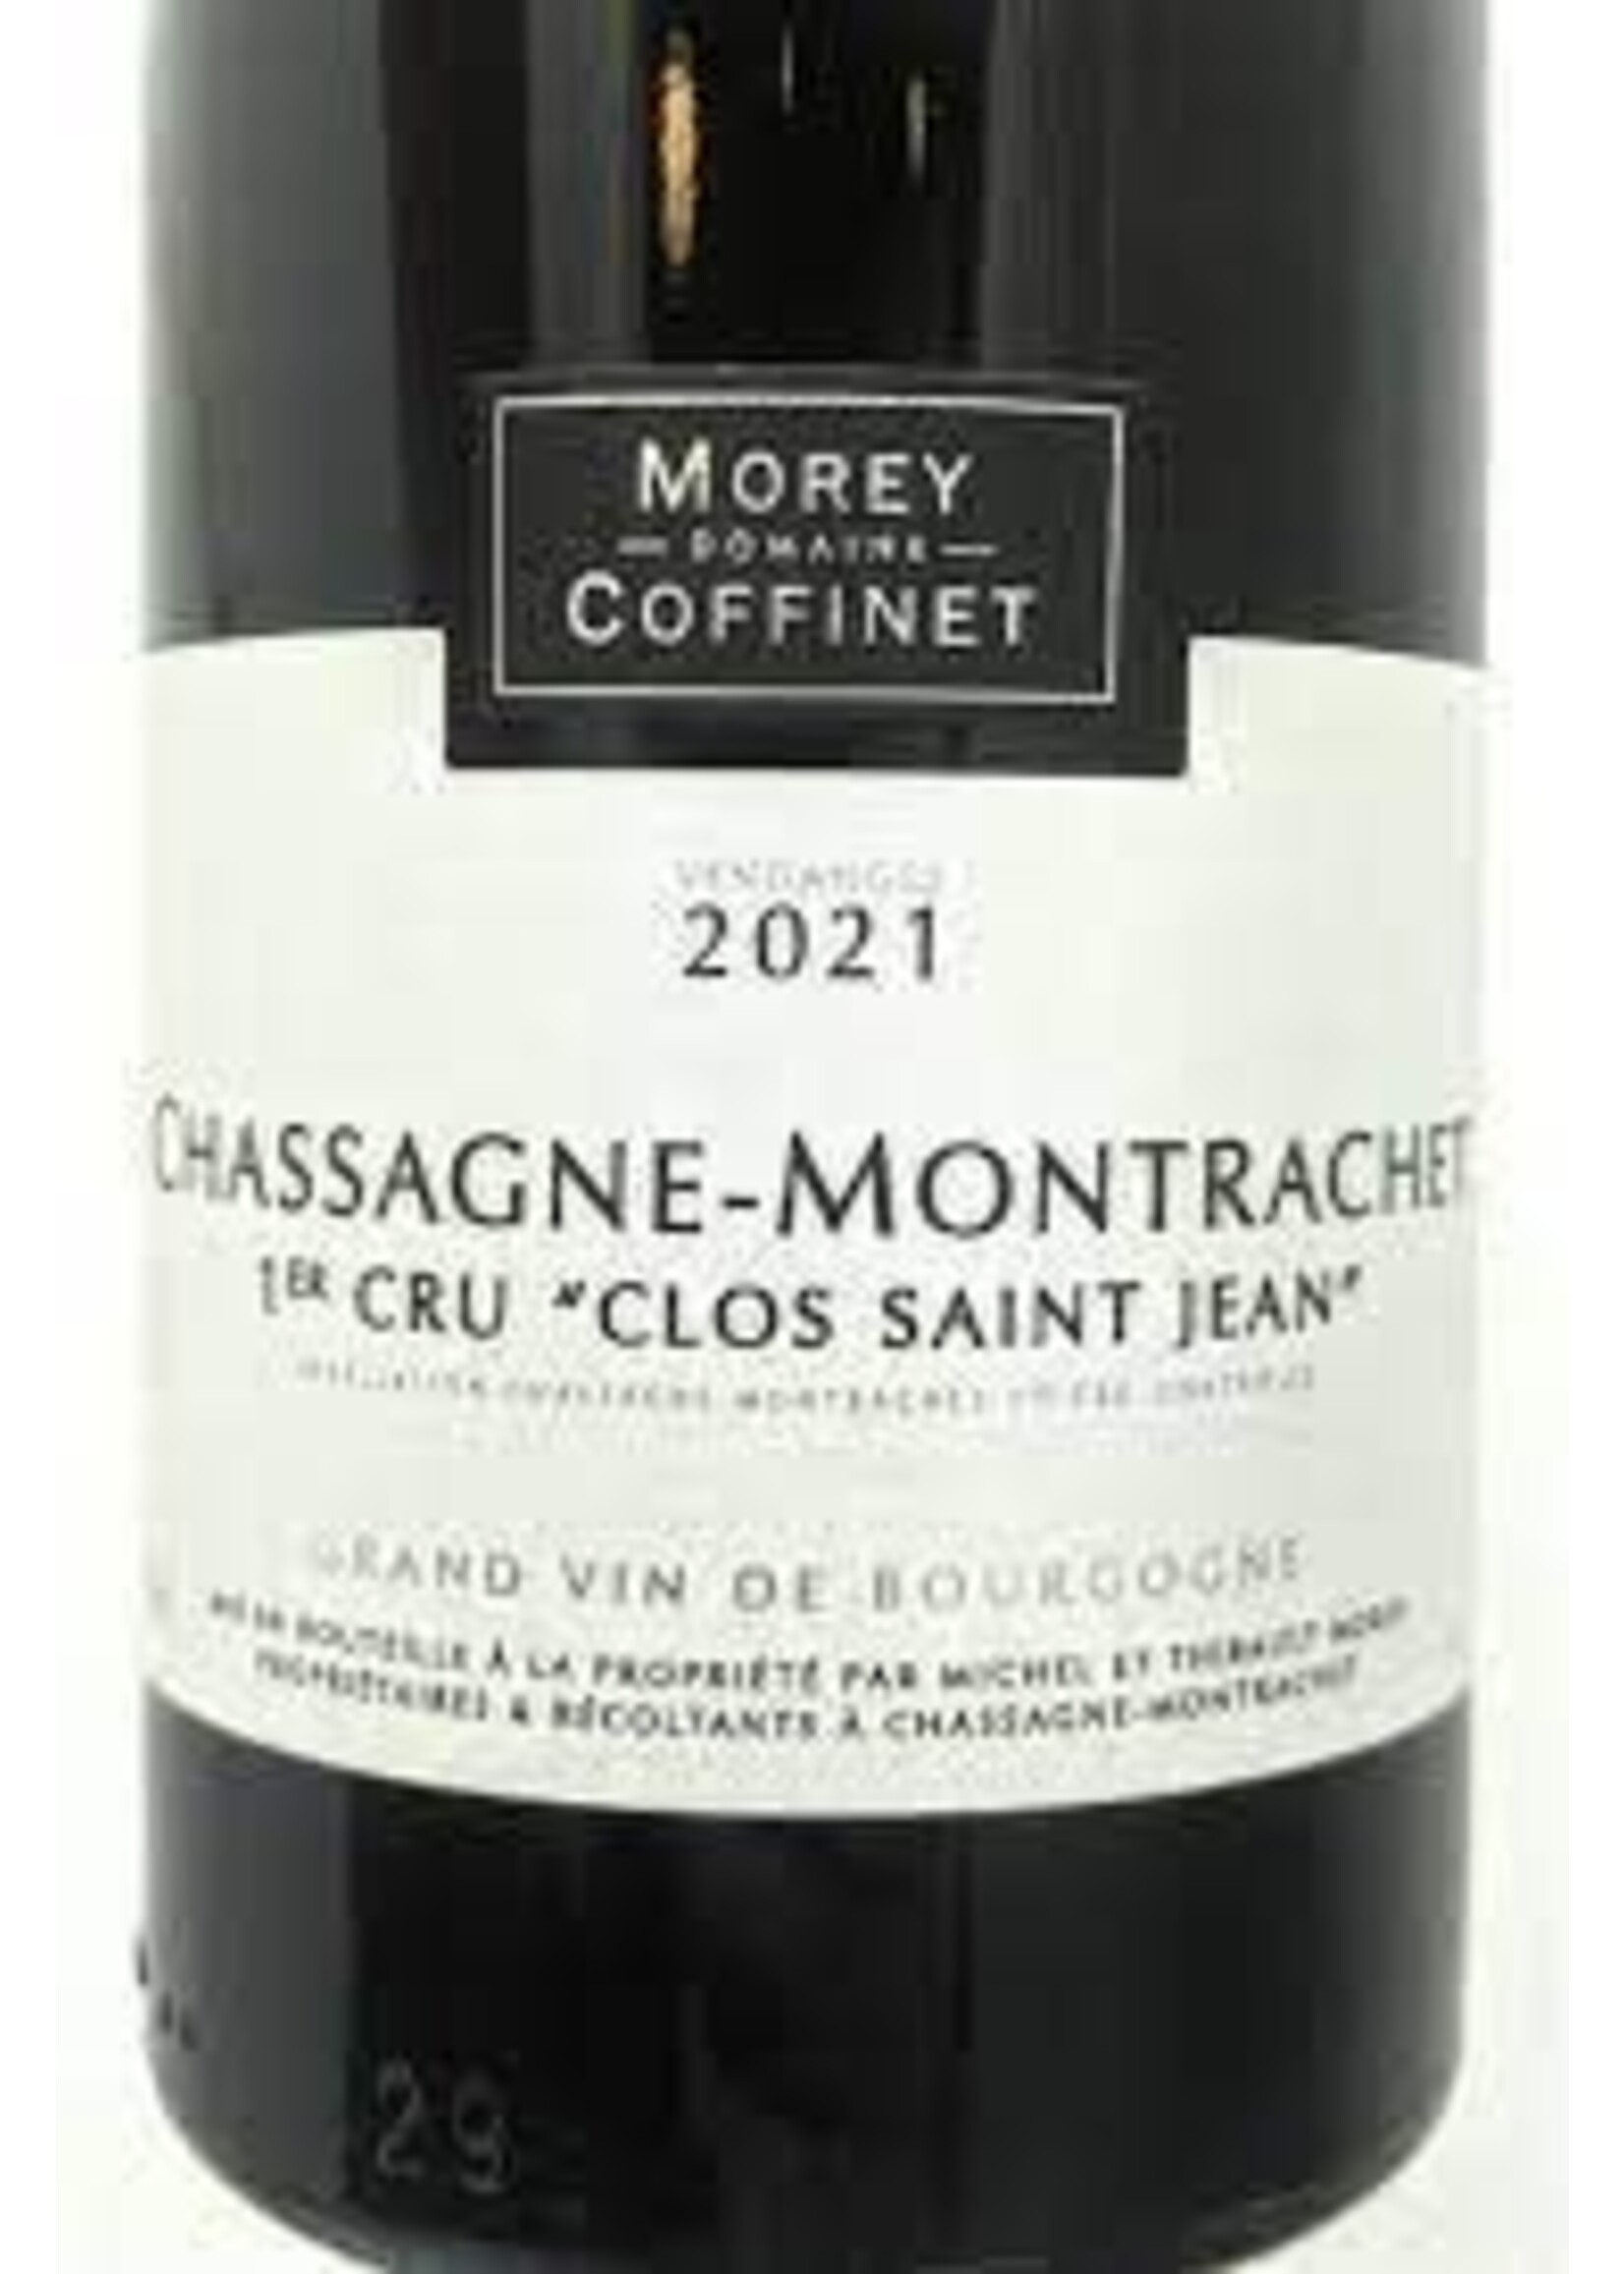 Morey-Coffinet 2021 Chassagne-Montrachet 1er Cru Clos Saint-Jean Rouge 750ml